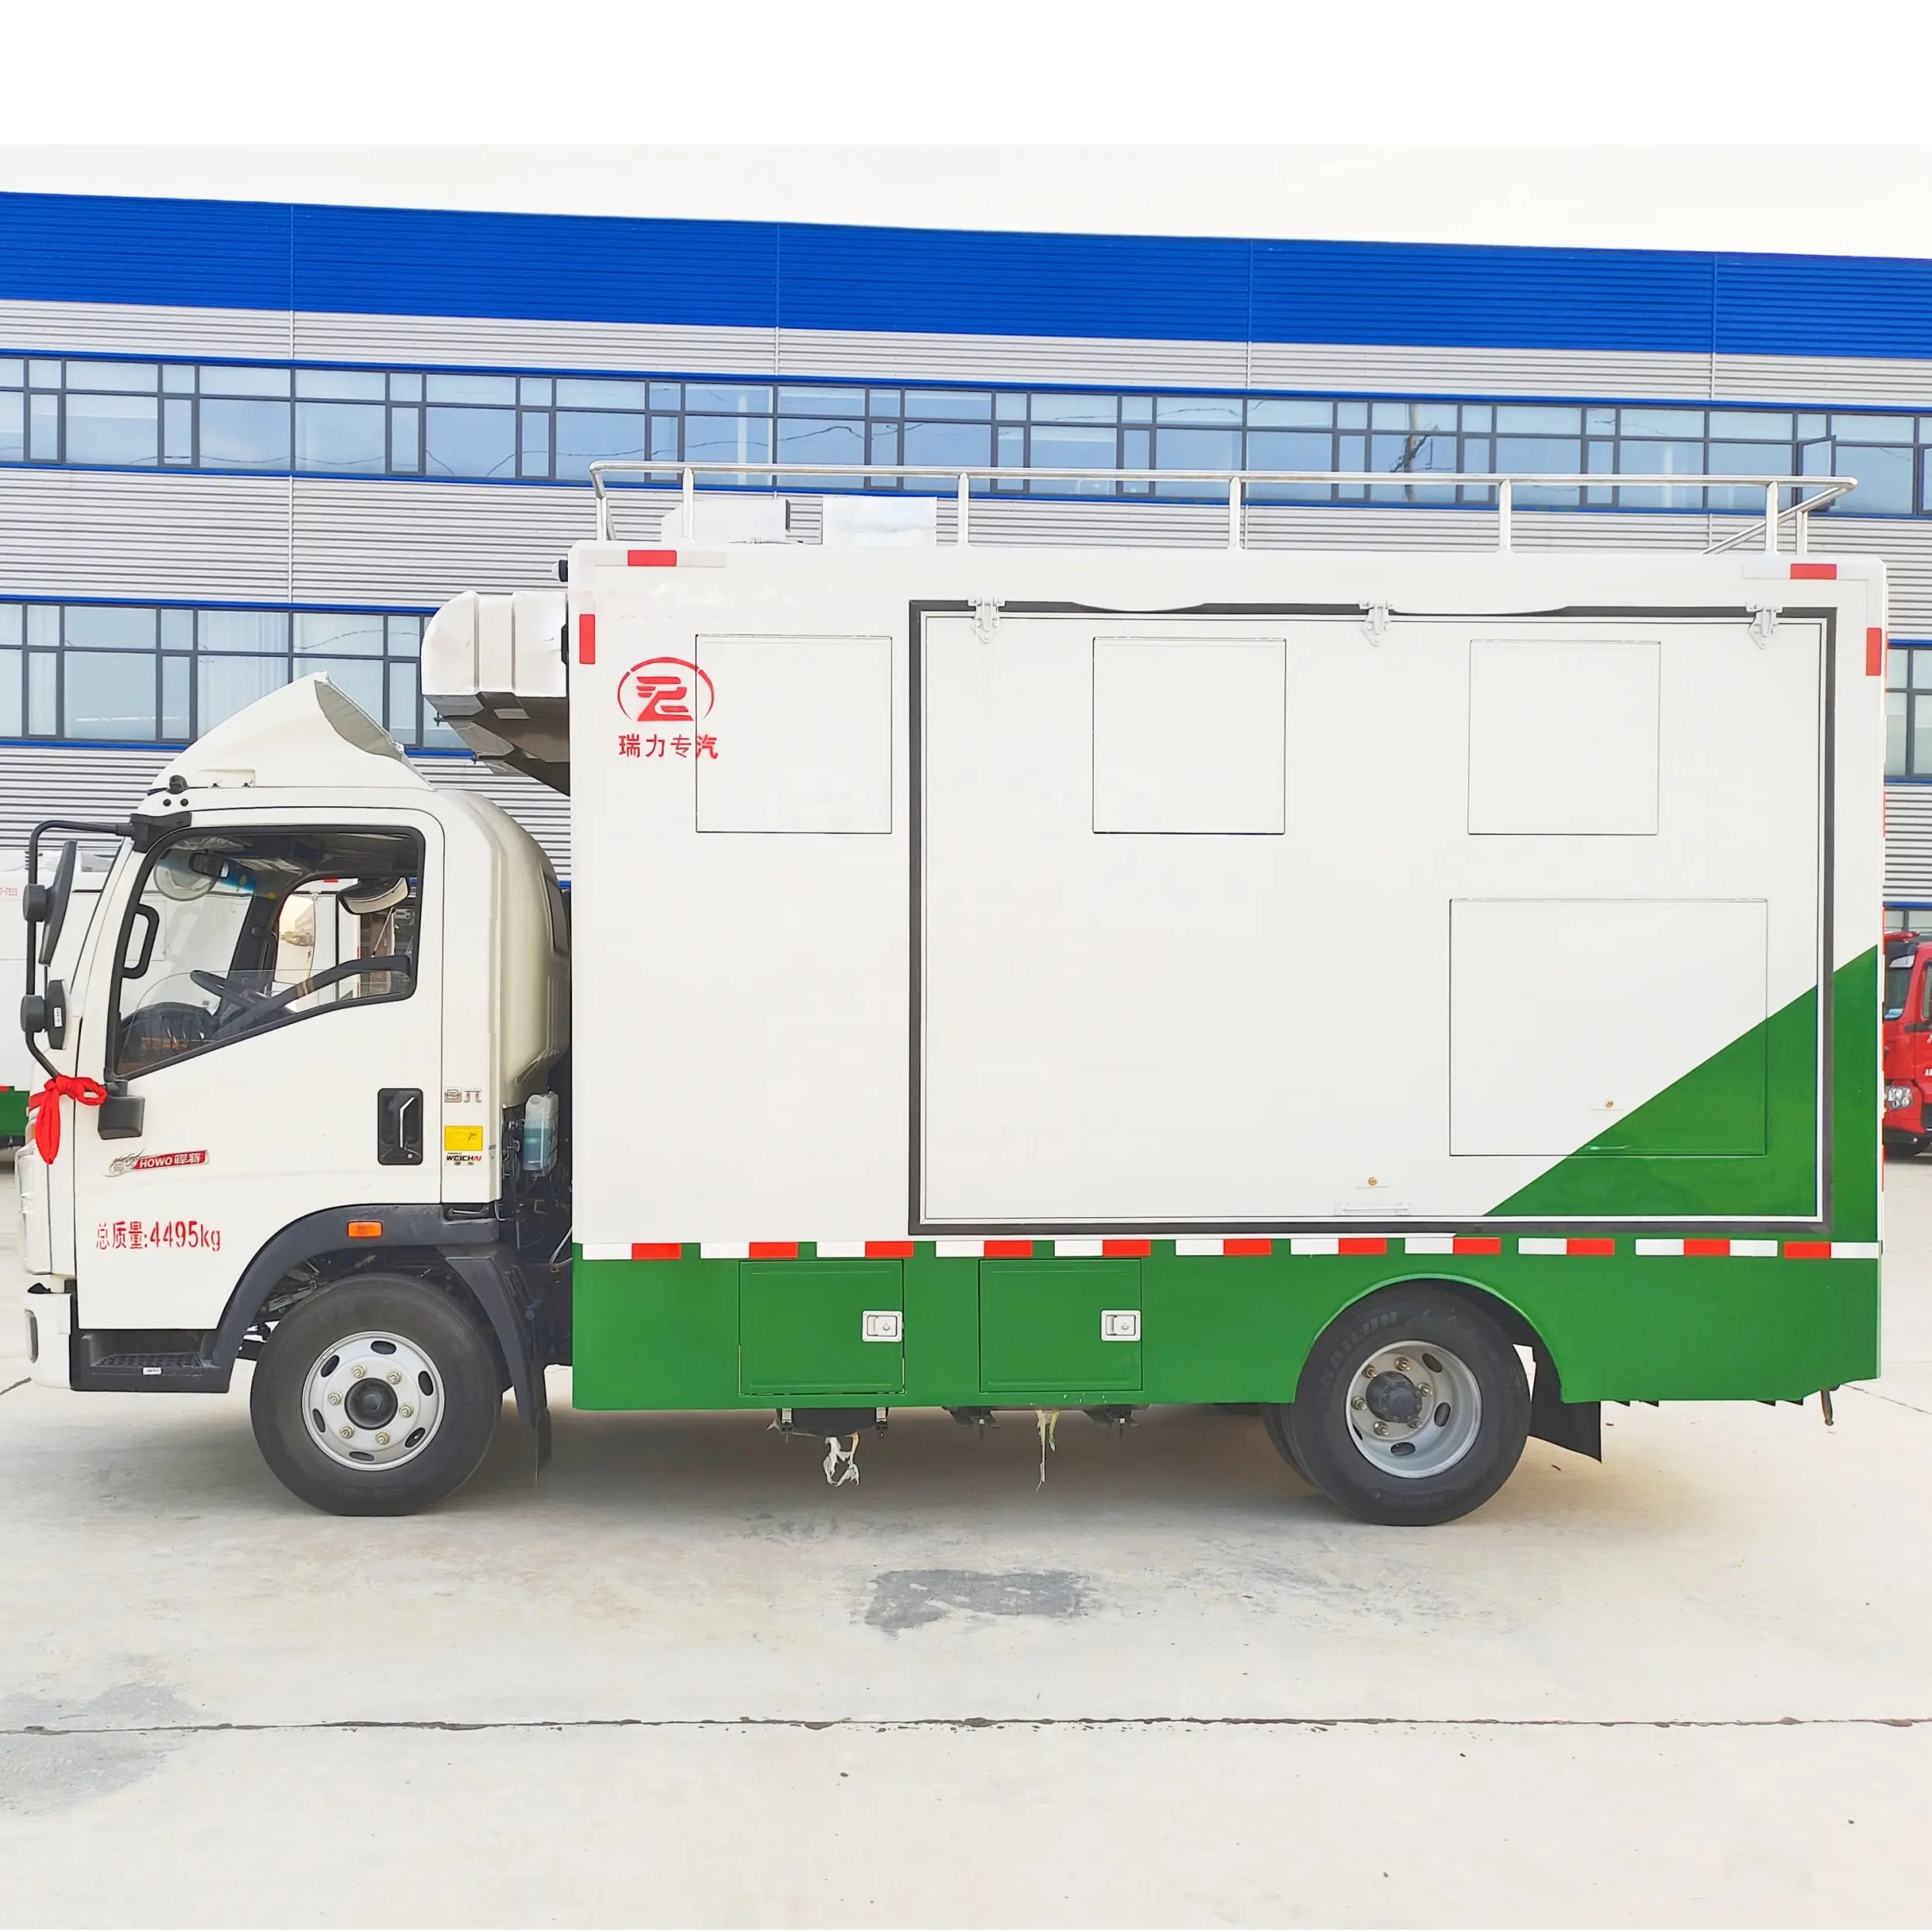 Nueva llegada 4 metros de longitud de venta de alimentos remolque de calle móvil camión de comida tienda de alimentos